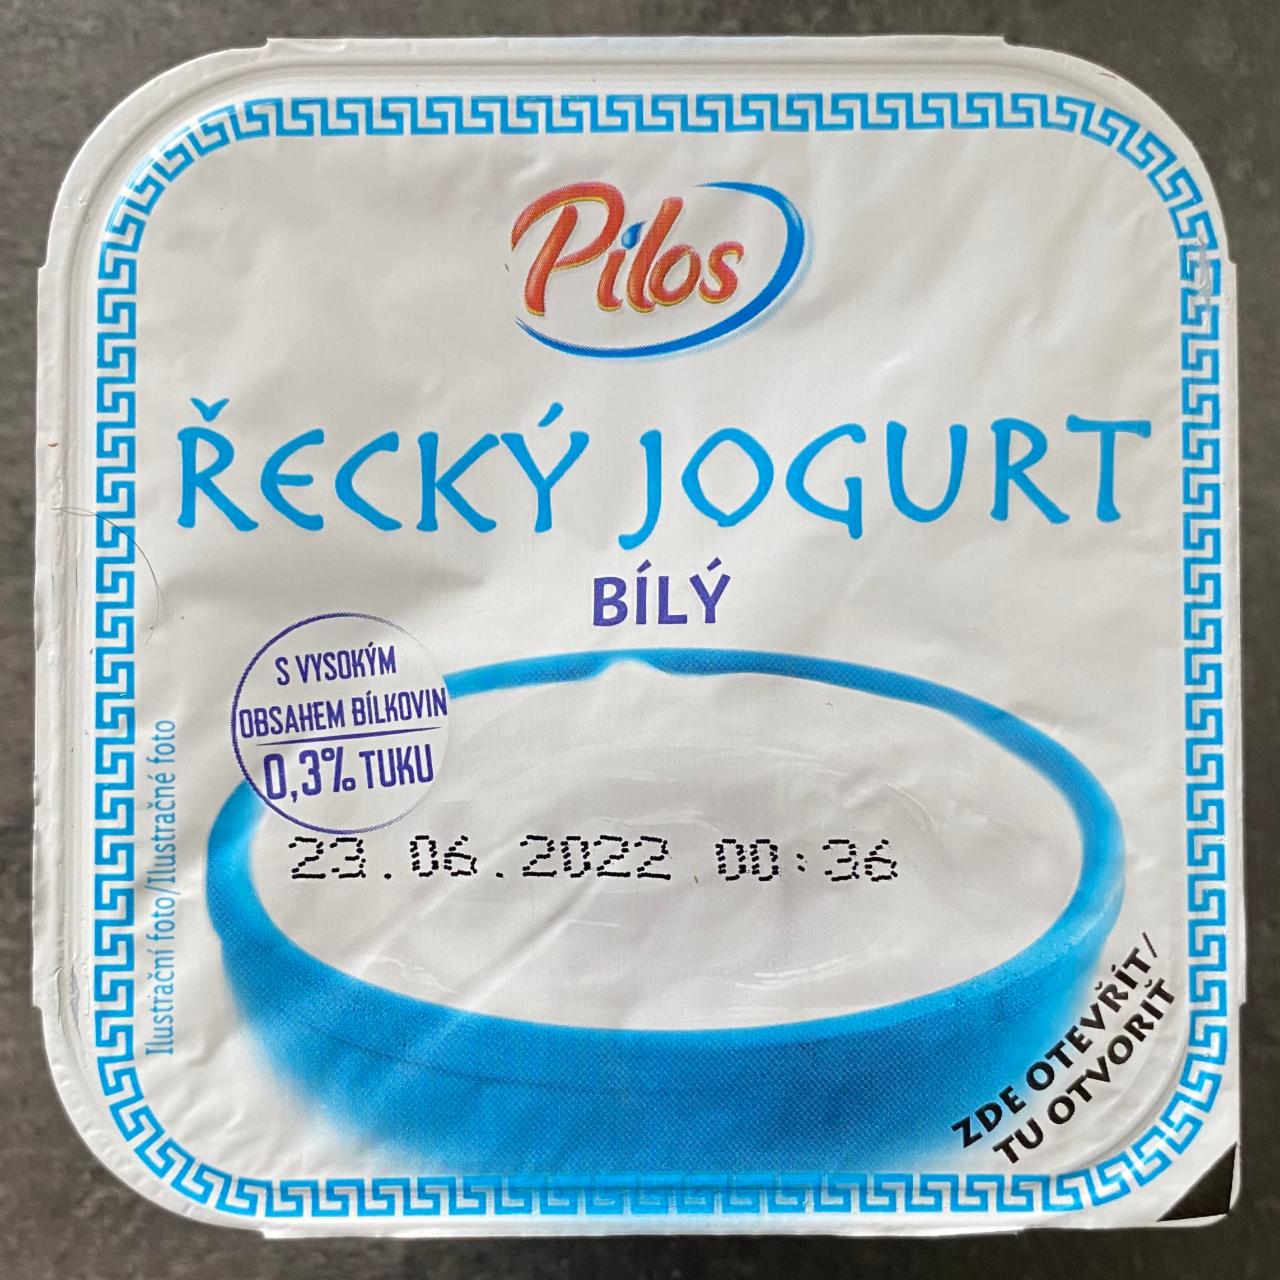 Фото - греческий йогурт белый 0.3% Pilos